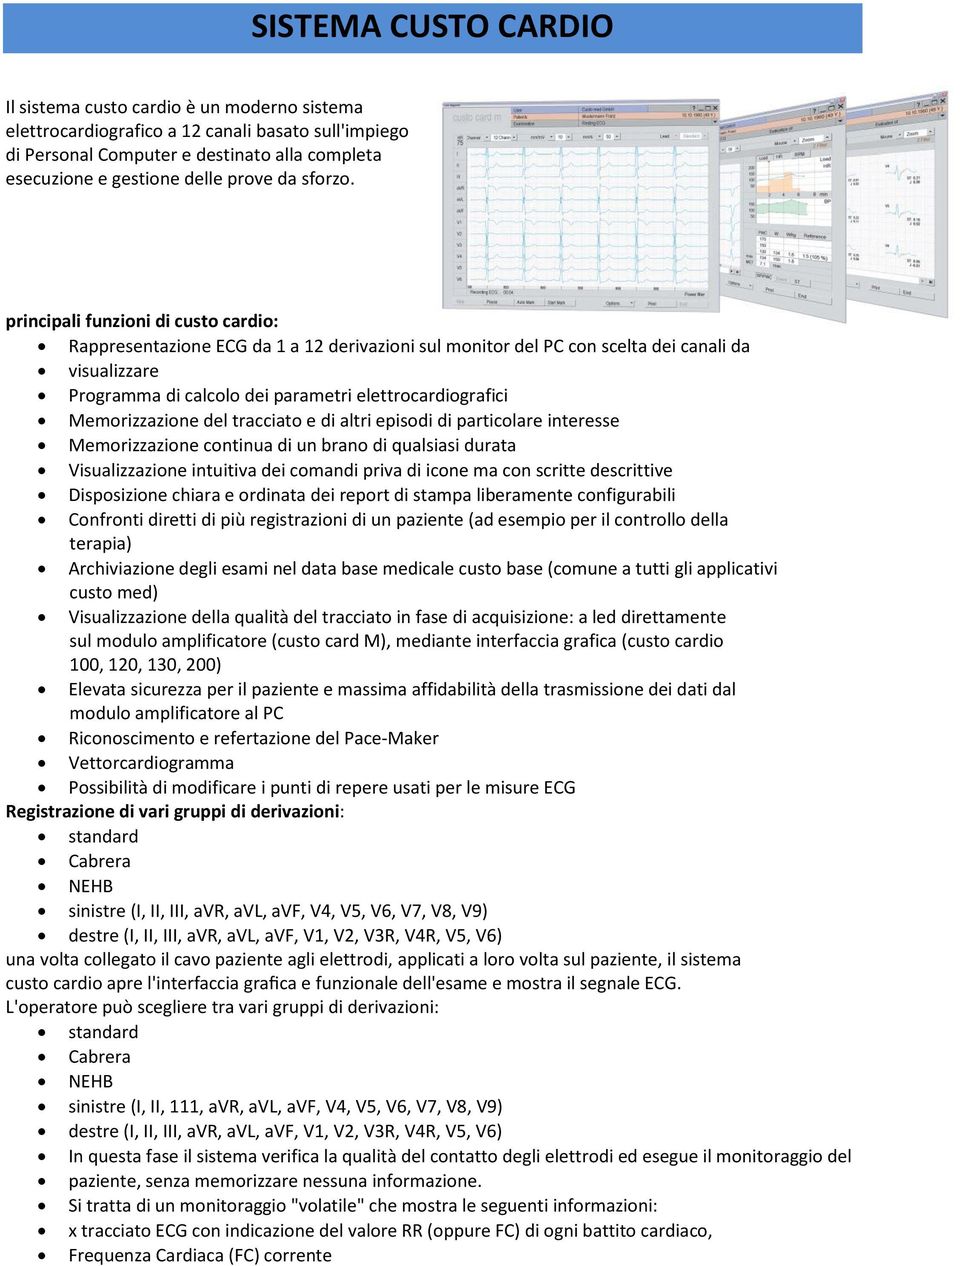 principali funzioni di custo cardio: Rappresentazione ECG da 1 a 12 derivazioni sul monitor del PC con scelta dei canali da visualizzare Programma di calcolo dei parametri elettrocardiografici